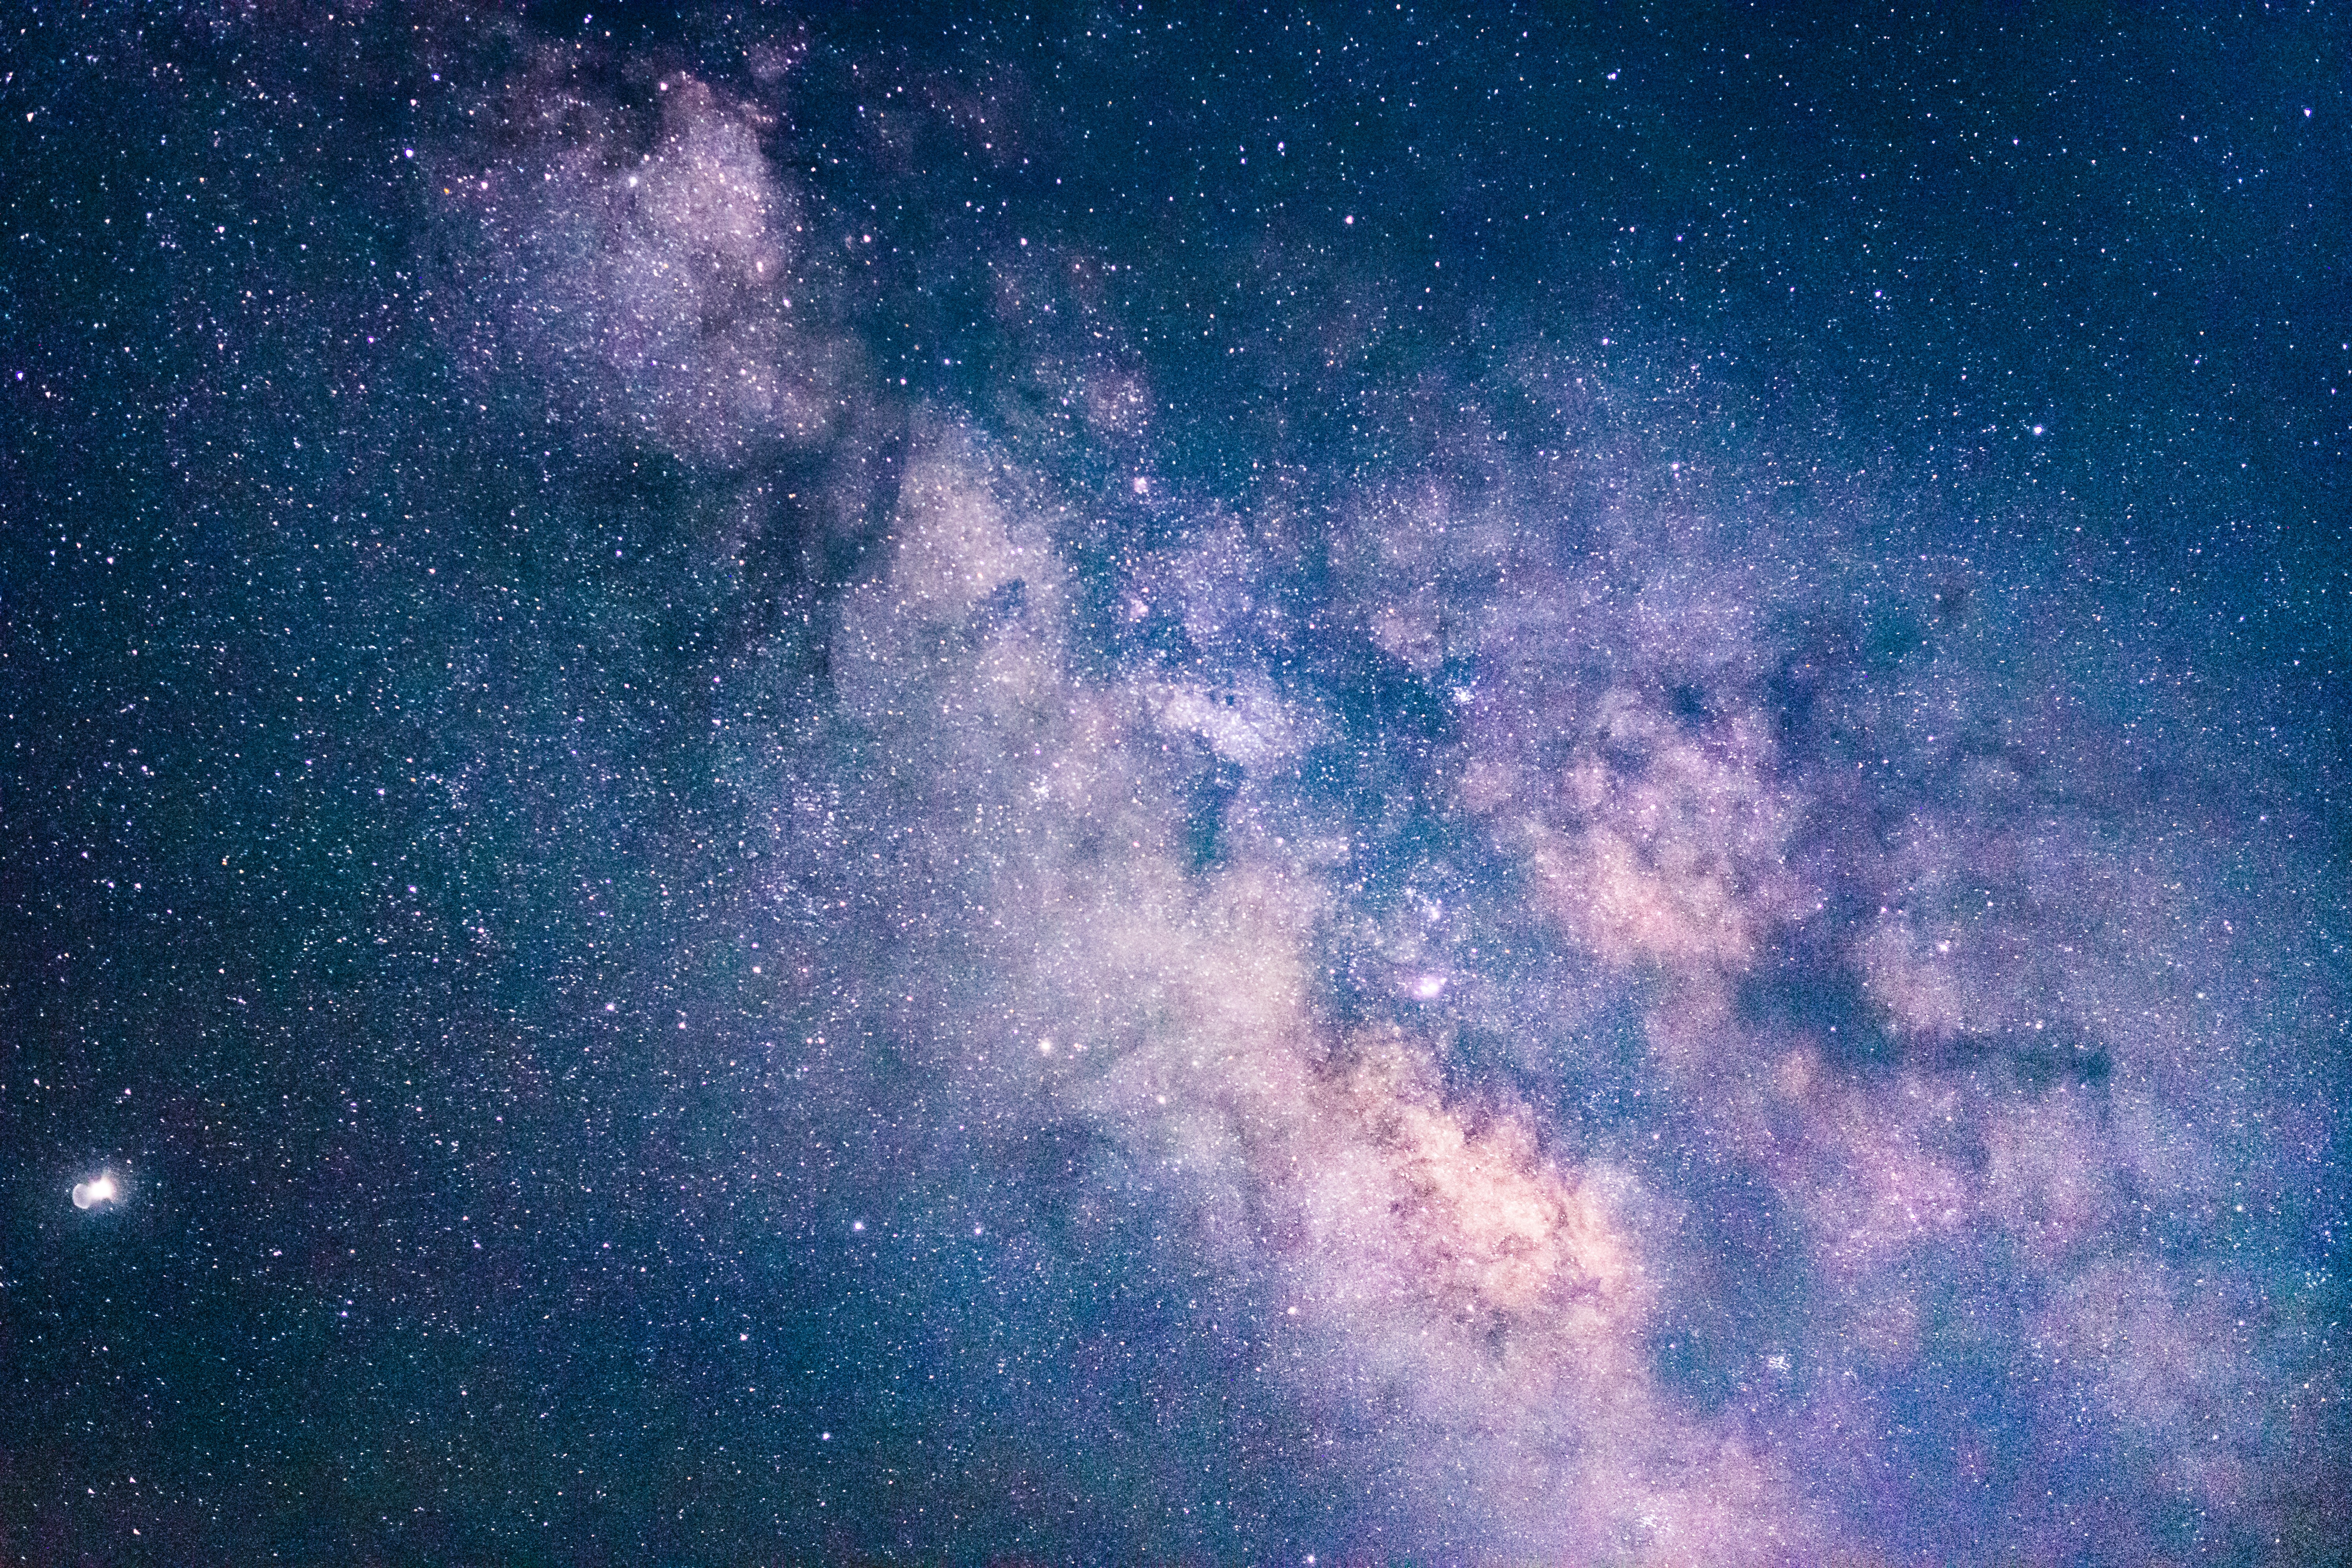 Bức ảnh của thiên hà sẽ khiến bạn trở nên thích thú với cảnh quan tuyệt đẹp của ngôi sao, với màu tím tuyệt đẹp và không gian rộng lớn. Cùng khám phá chân trời xa xôi với bức ảnh này.